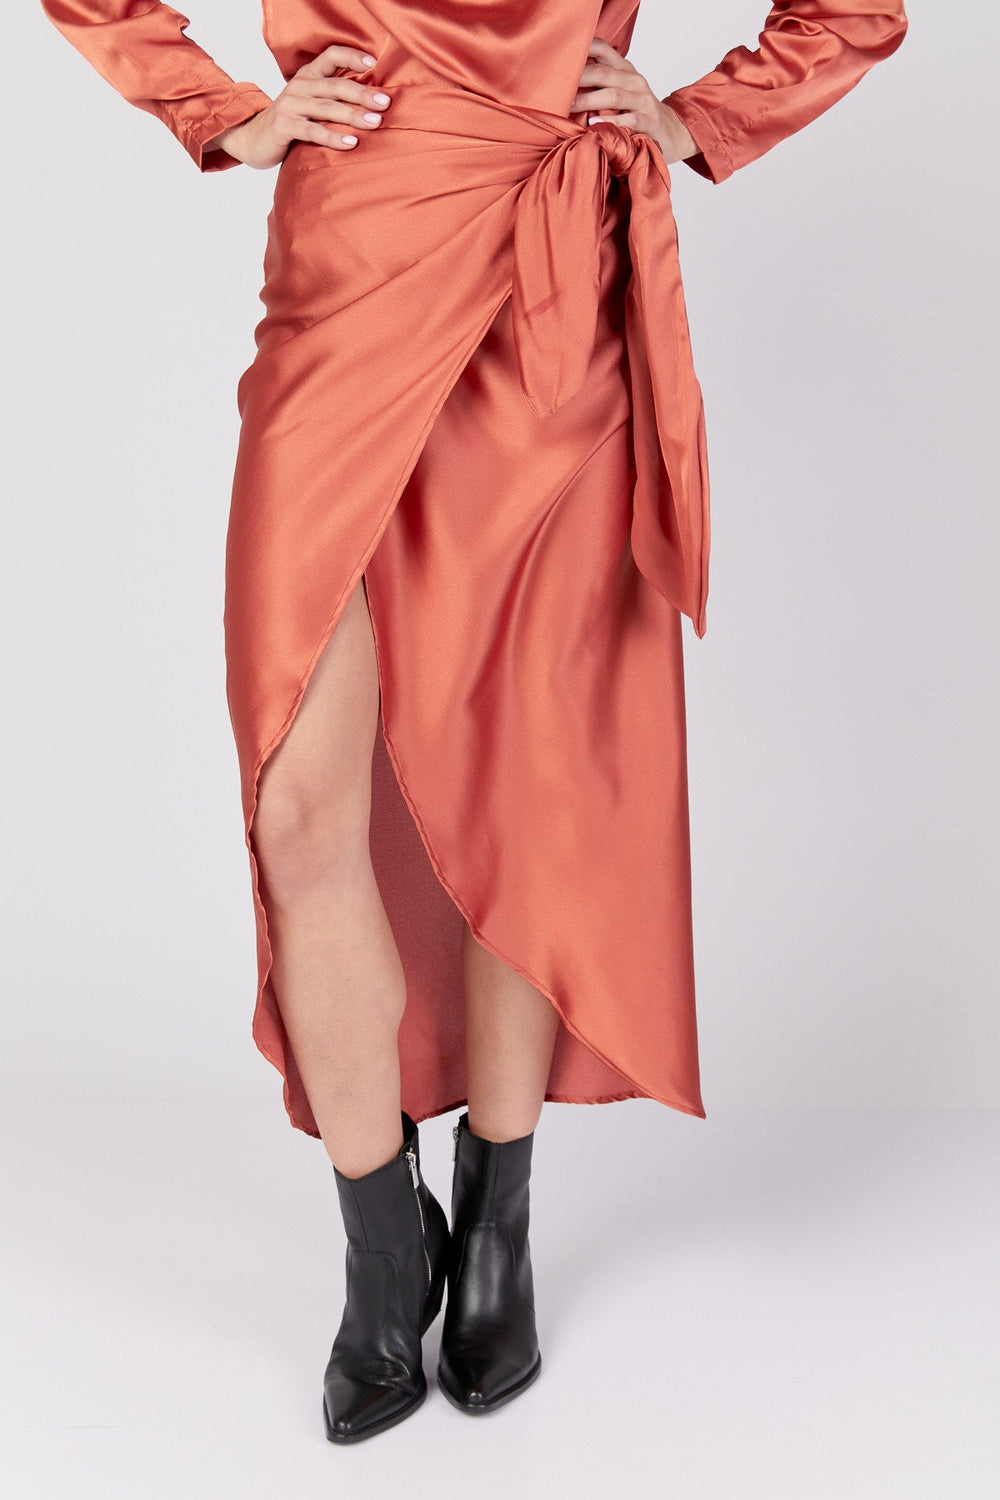 חצאית איזבלה בצבע חמרה - Dana Sidi